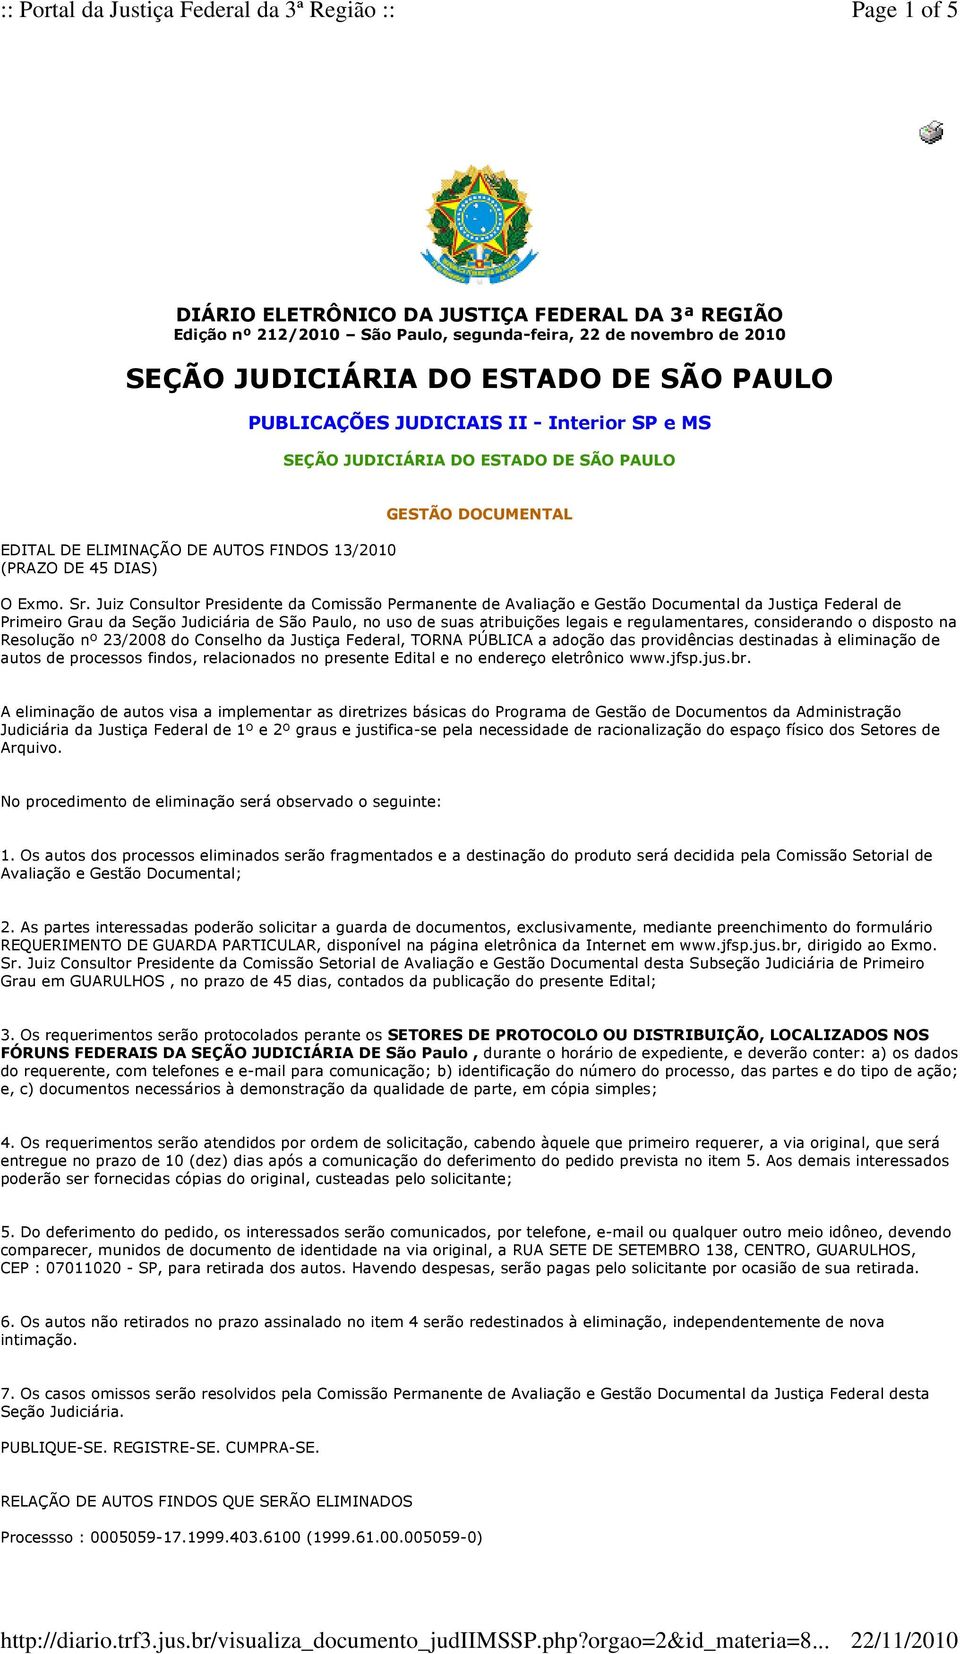 Juiz Consultor Presidente da Comissão Permanente de Avaliação e Gestão Documental da Justiça Federal de Primeiro Grau da Seção Judiciária de São Paulo, no uso de suas atribuições legais e